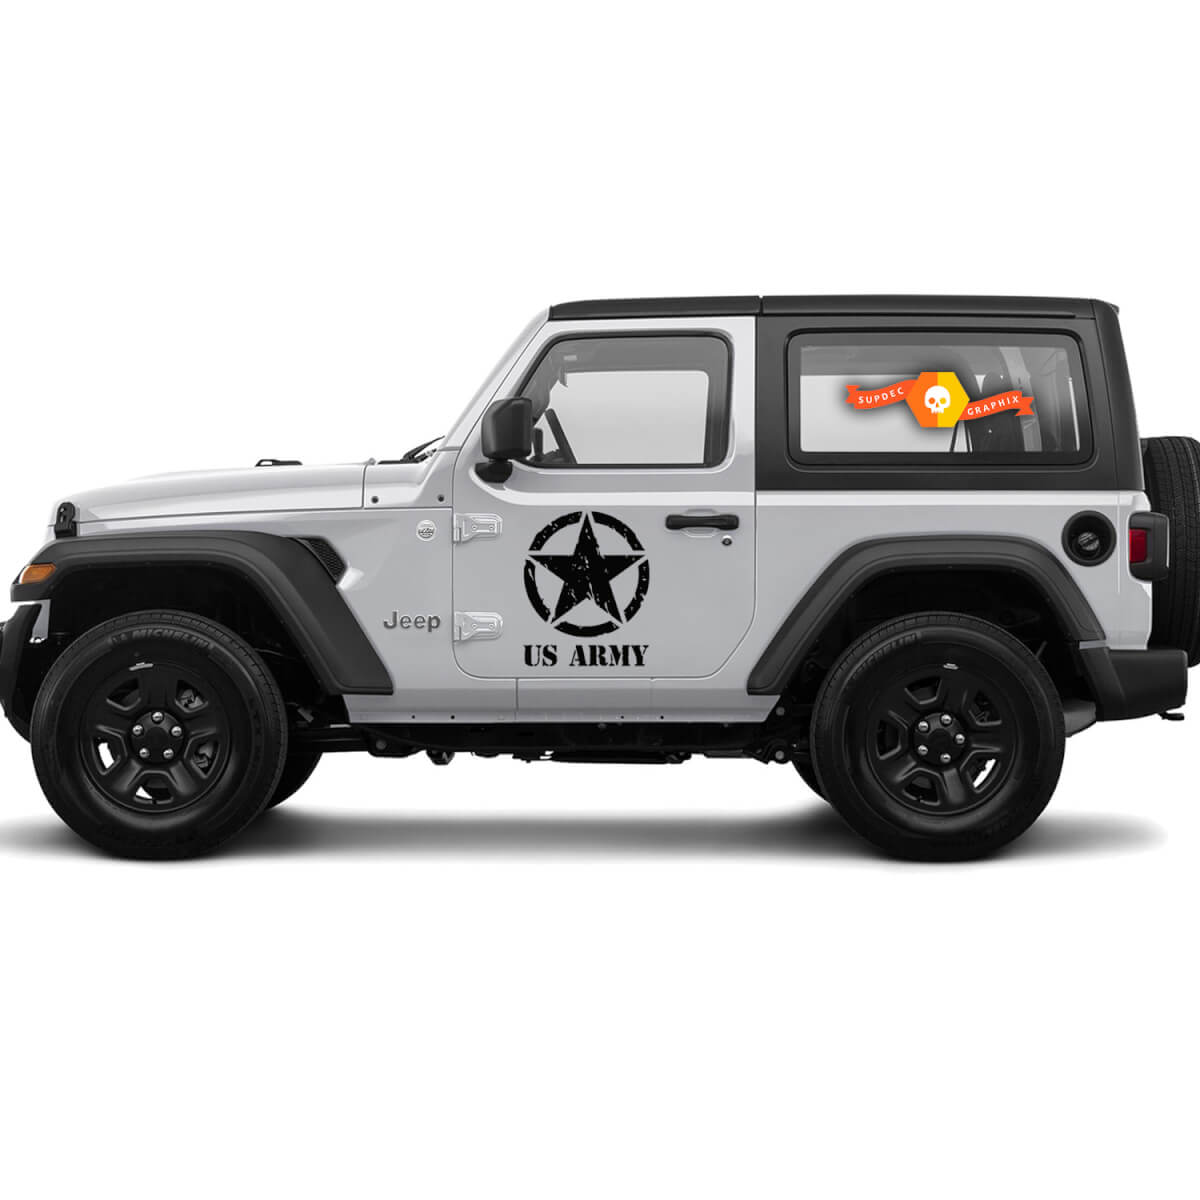 2 Jeep US Army con sporgente stella militare Wrangler Decal Sticker Graphics Vinyl